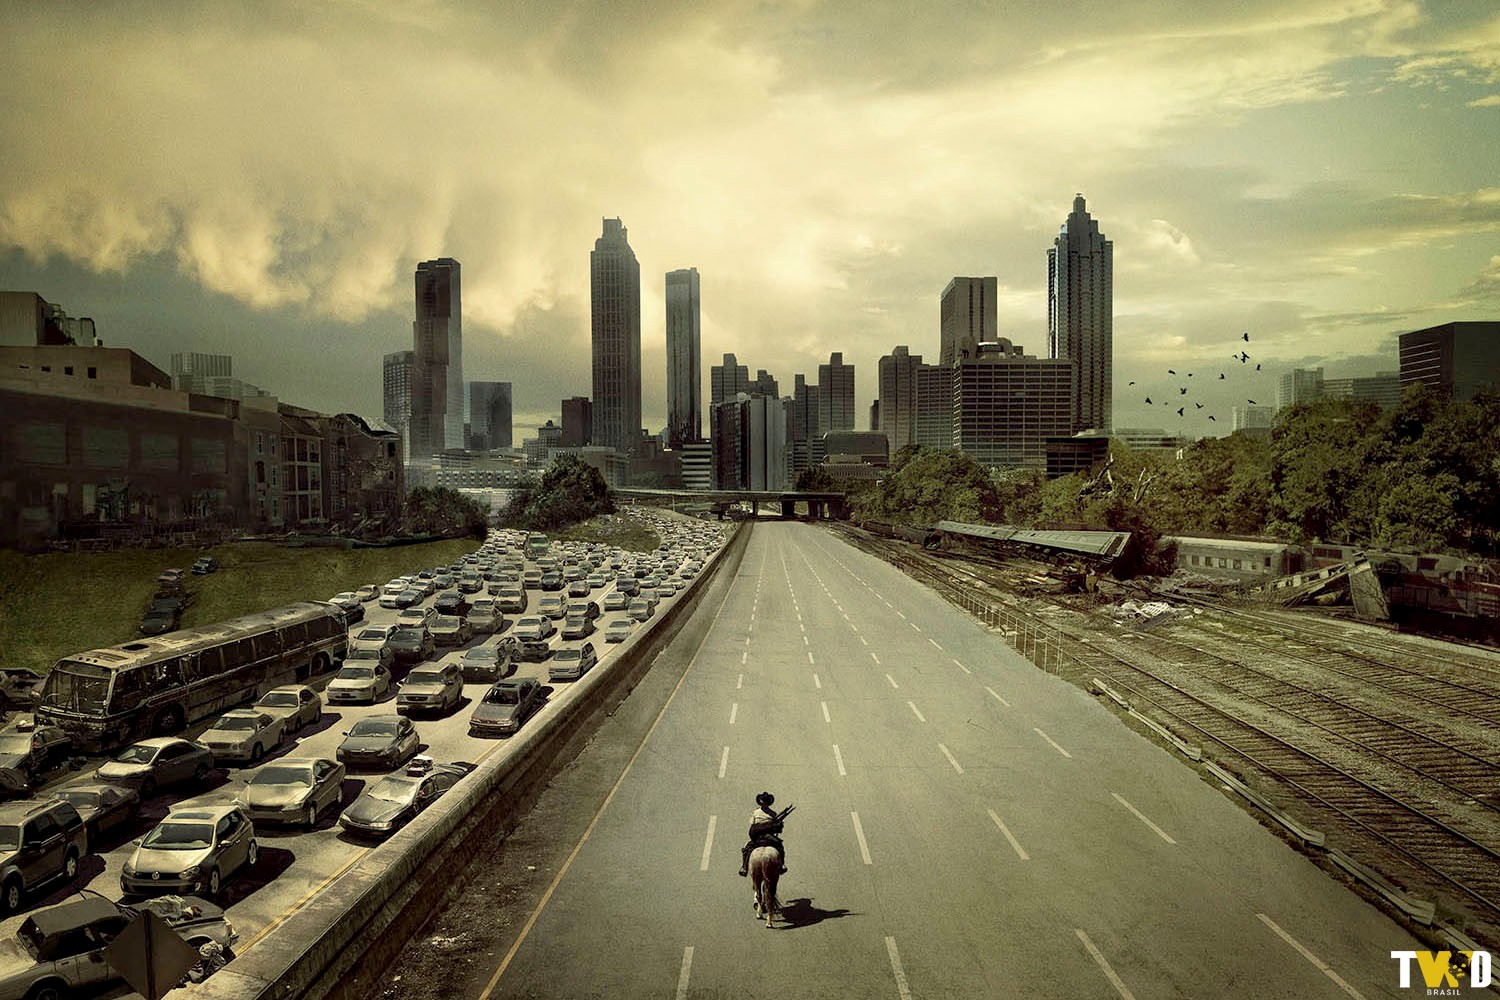 Pôster da 1ª temporada de The Walking Dead mostrando Rick Grimes entrando em Atlanta montado em seu cavalo